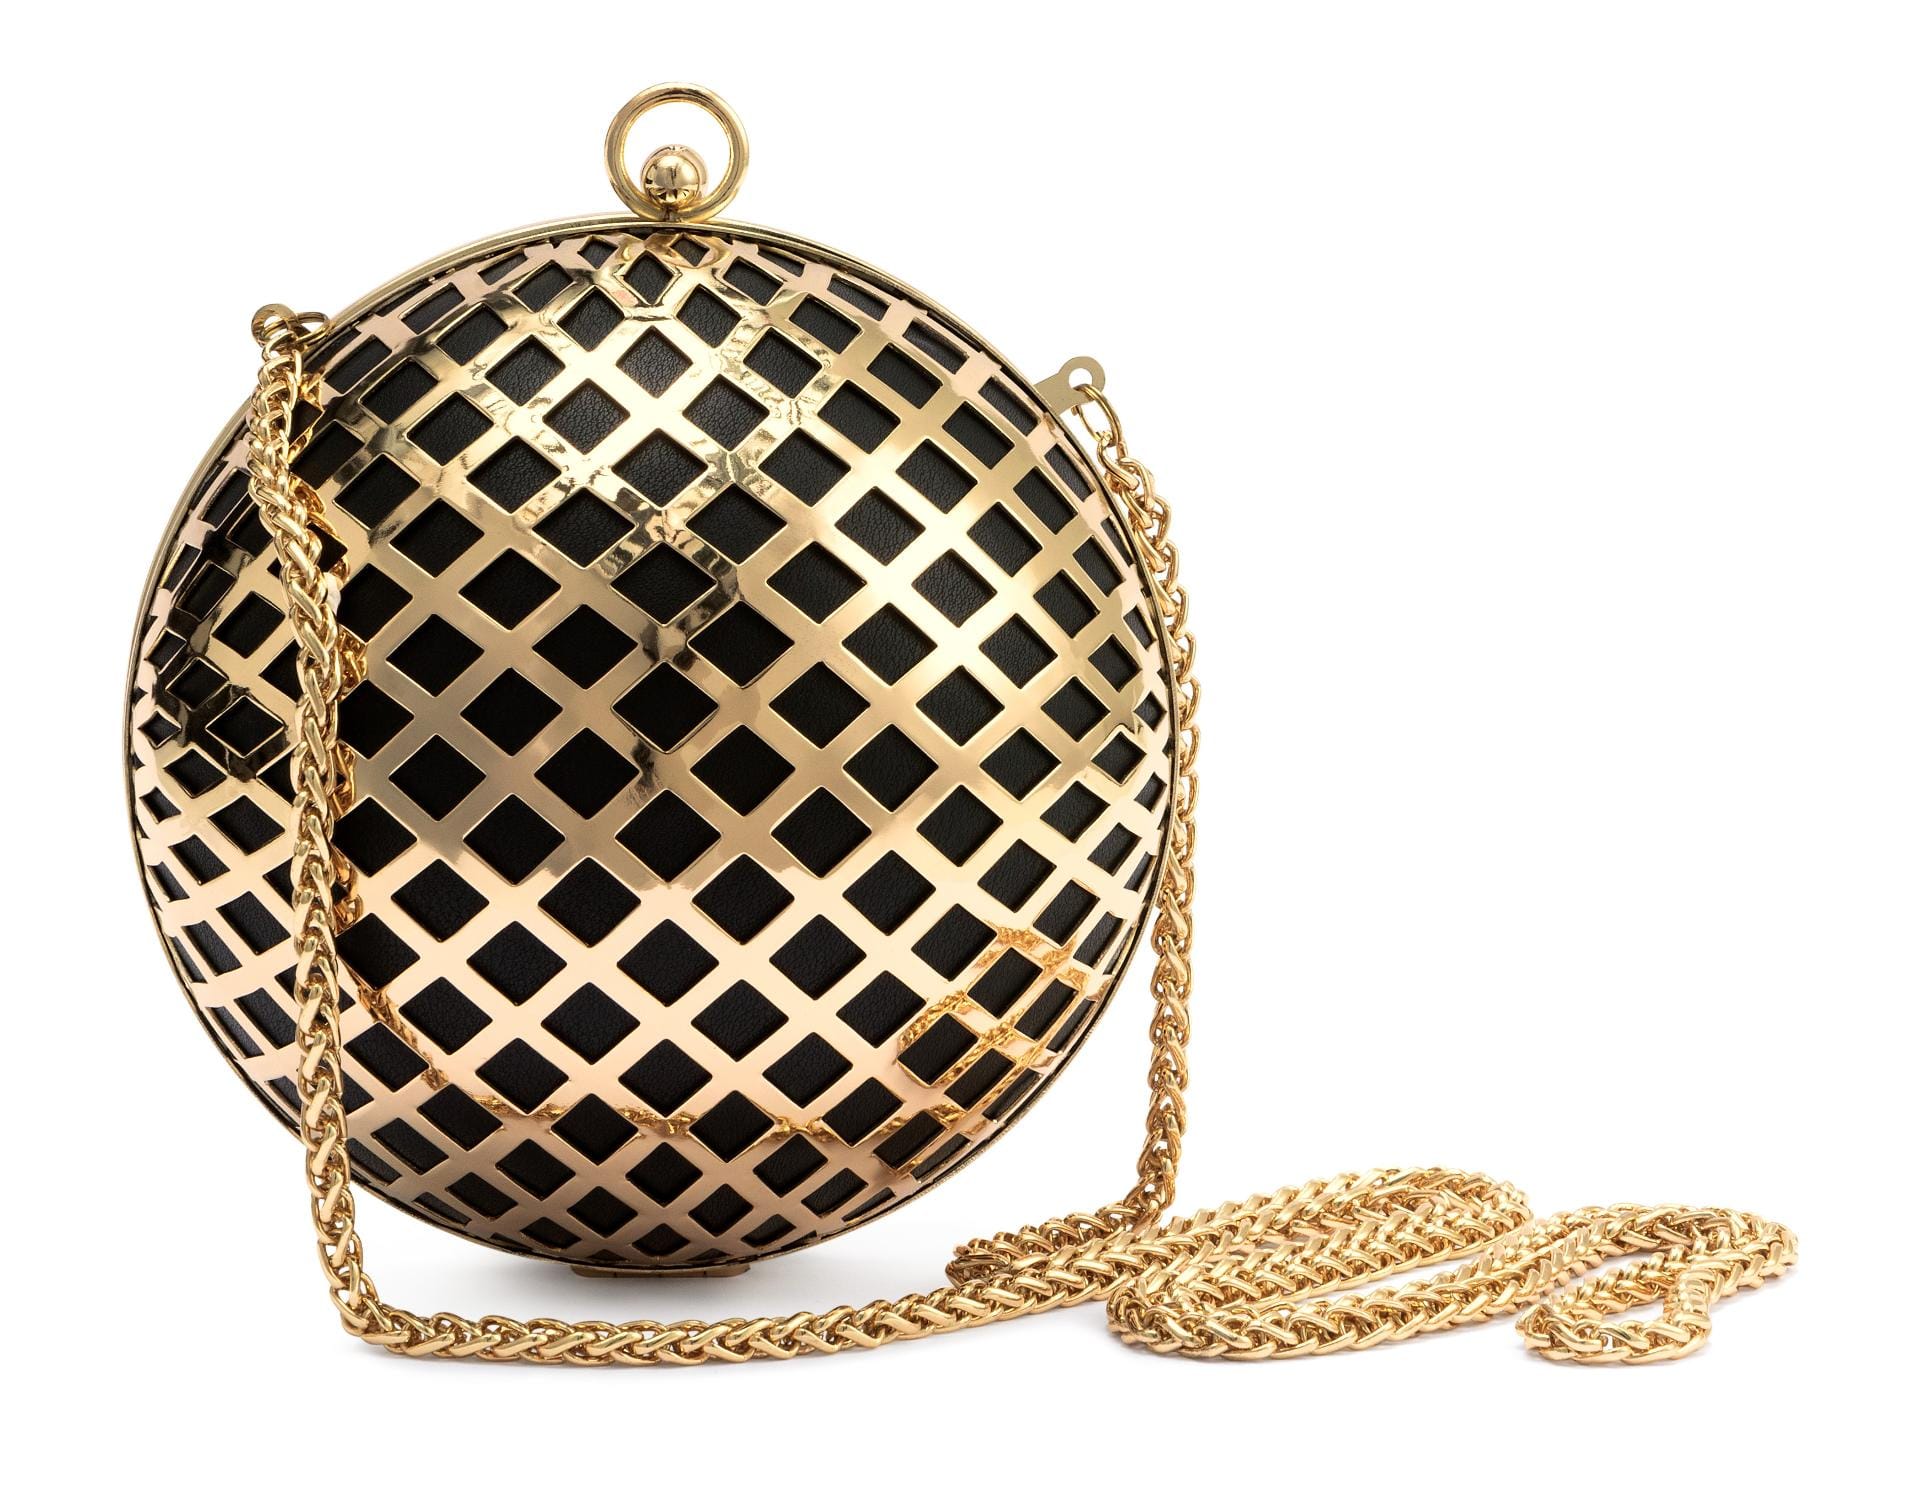 An Weihnachten und Silvester der perfekte Begleiter: goldglänzende Hardcase-Taschen. In dem harten Gehäuse sind Handy und Geldbeutel sicher verwahrt.